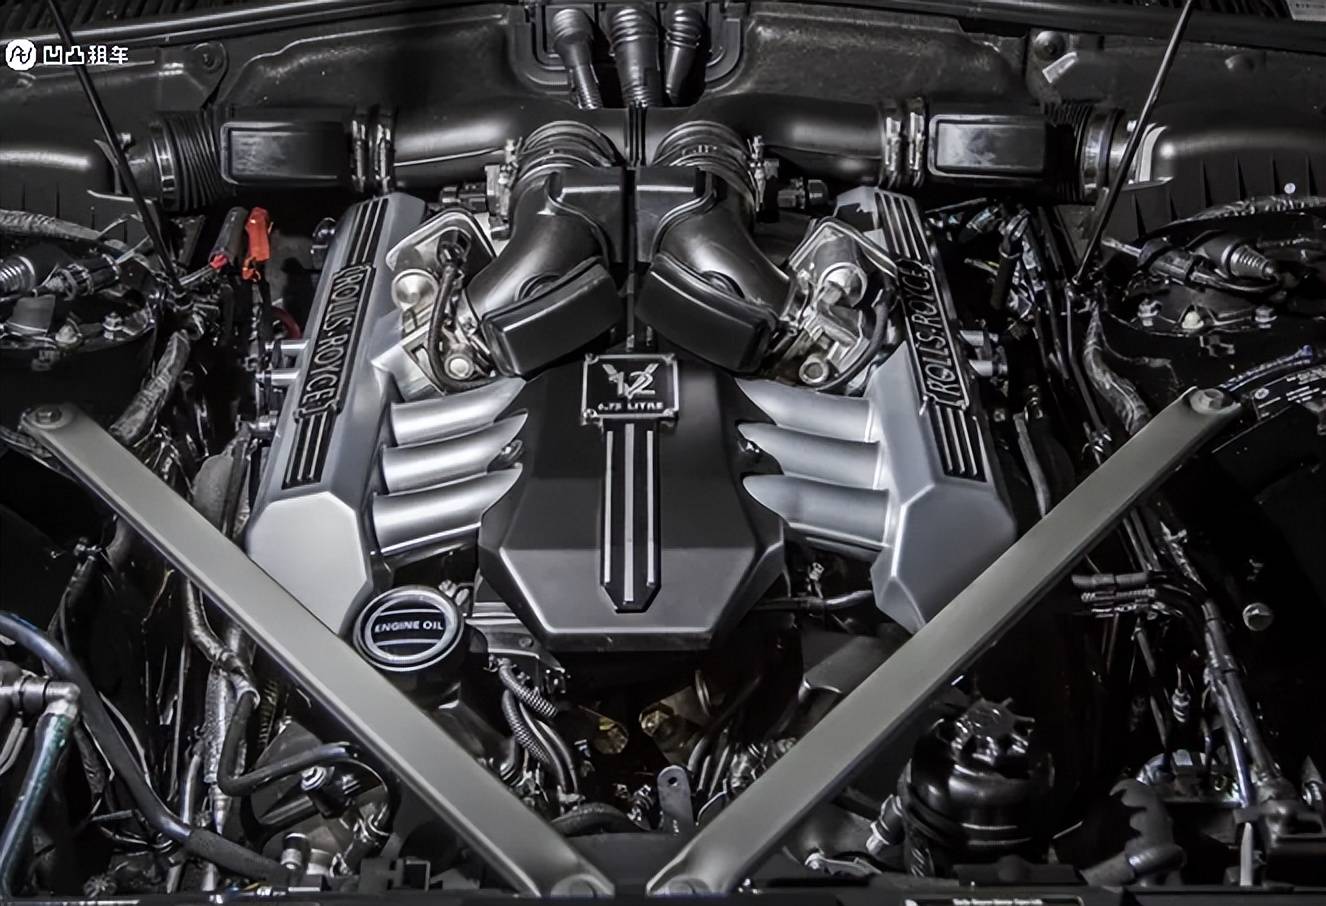 新劳斯莱斯幻影官图发布,传承了v12发动机